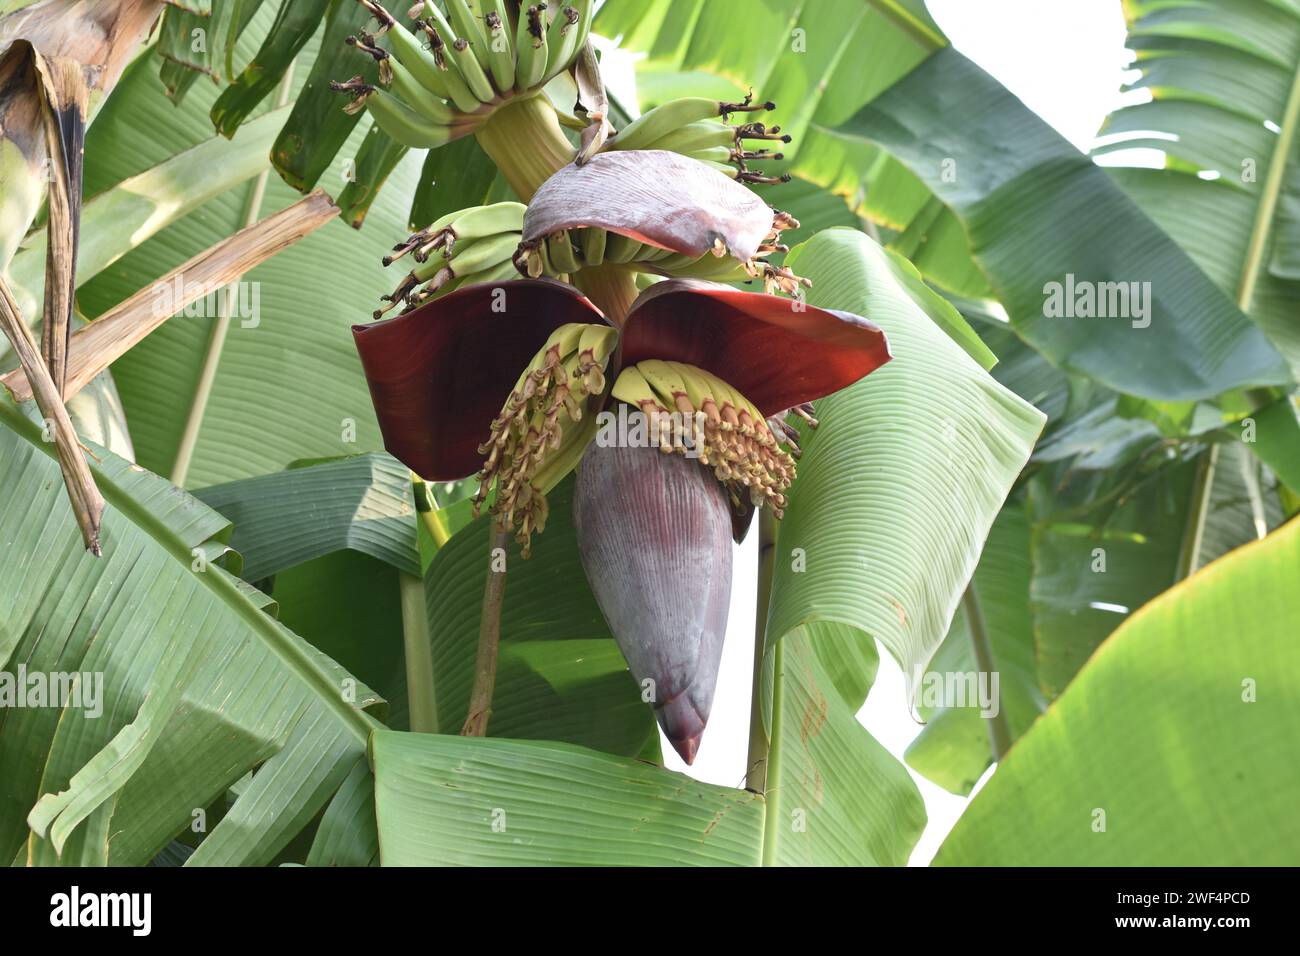 Wunderschöne Bananenblume, die an einem Bananenbaum hängt. Banane oder Musa Paradisiacal hat viele Vitamine und Nährstoffe Stockfoto